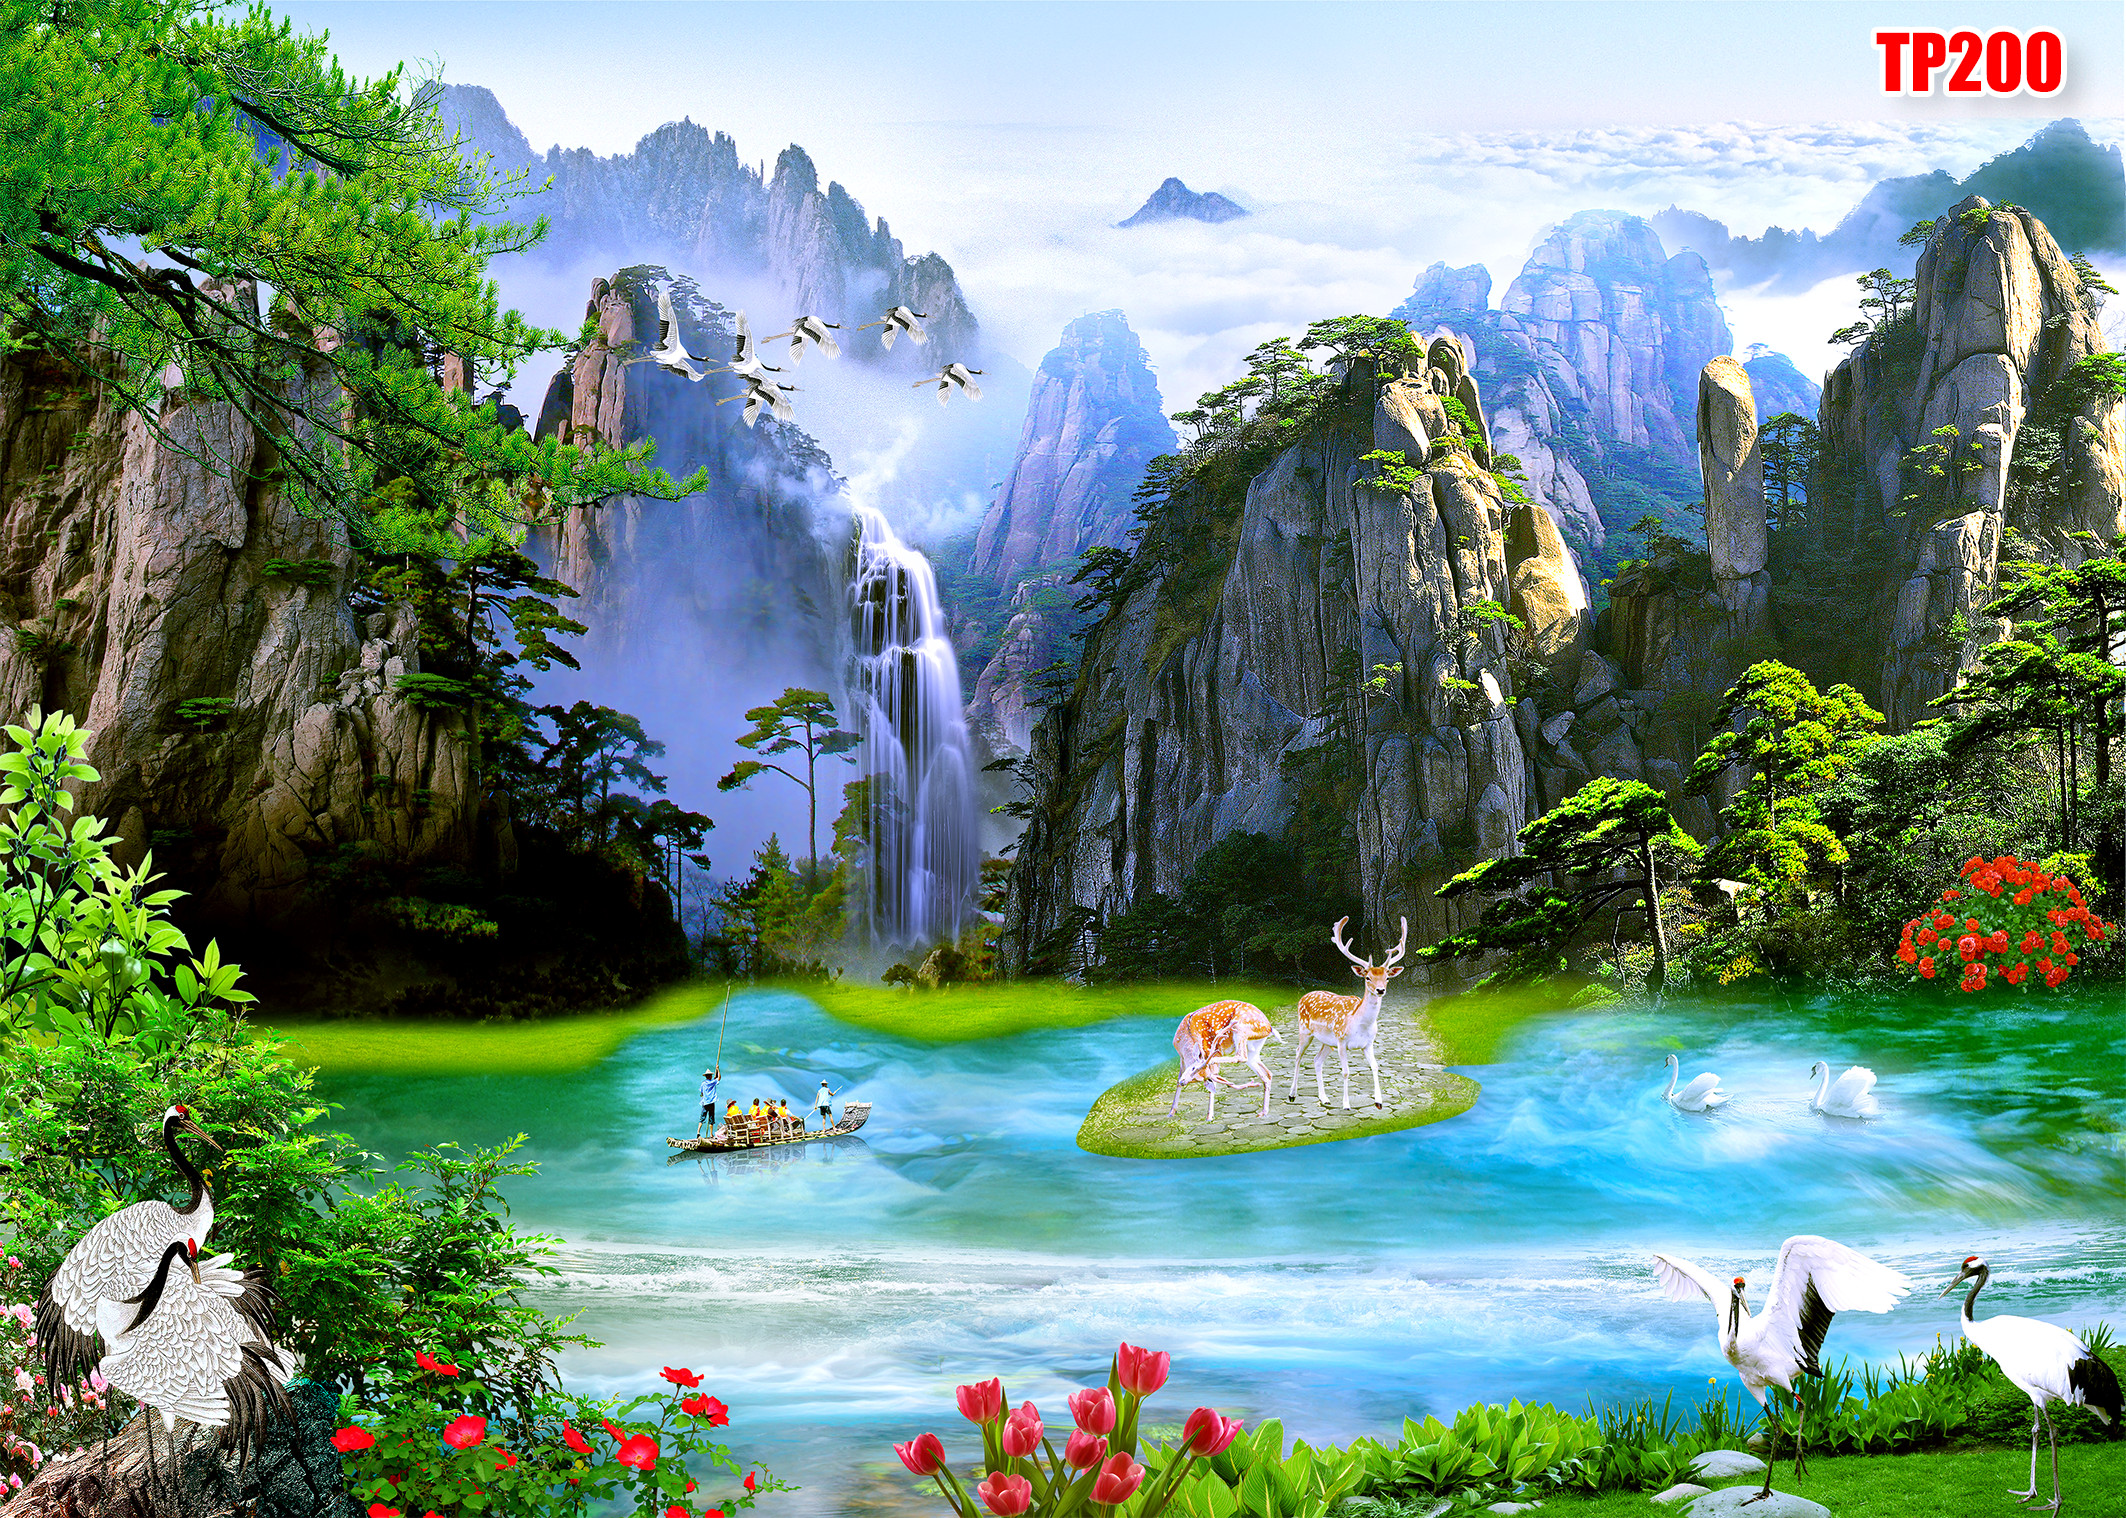 Tranh 3D Phong Cảnh cực đẹp 2021 - HOÀNG MINH ĐẠT